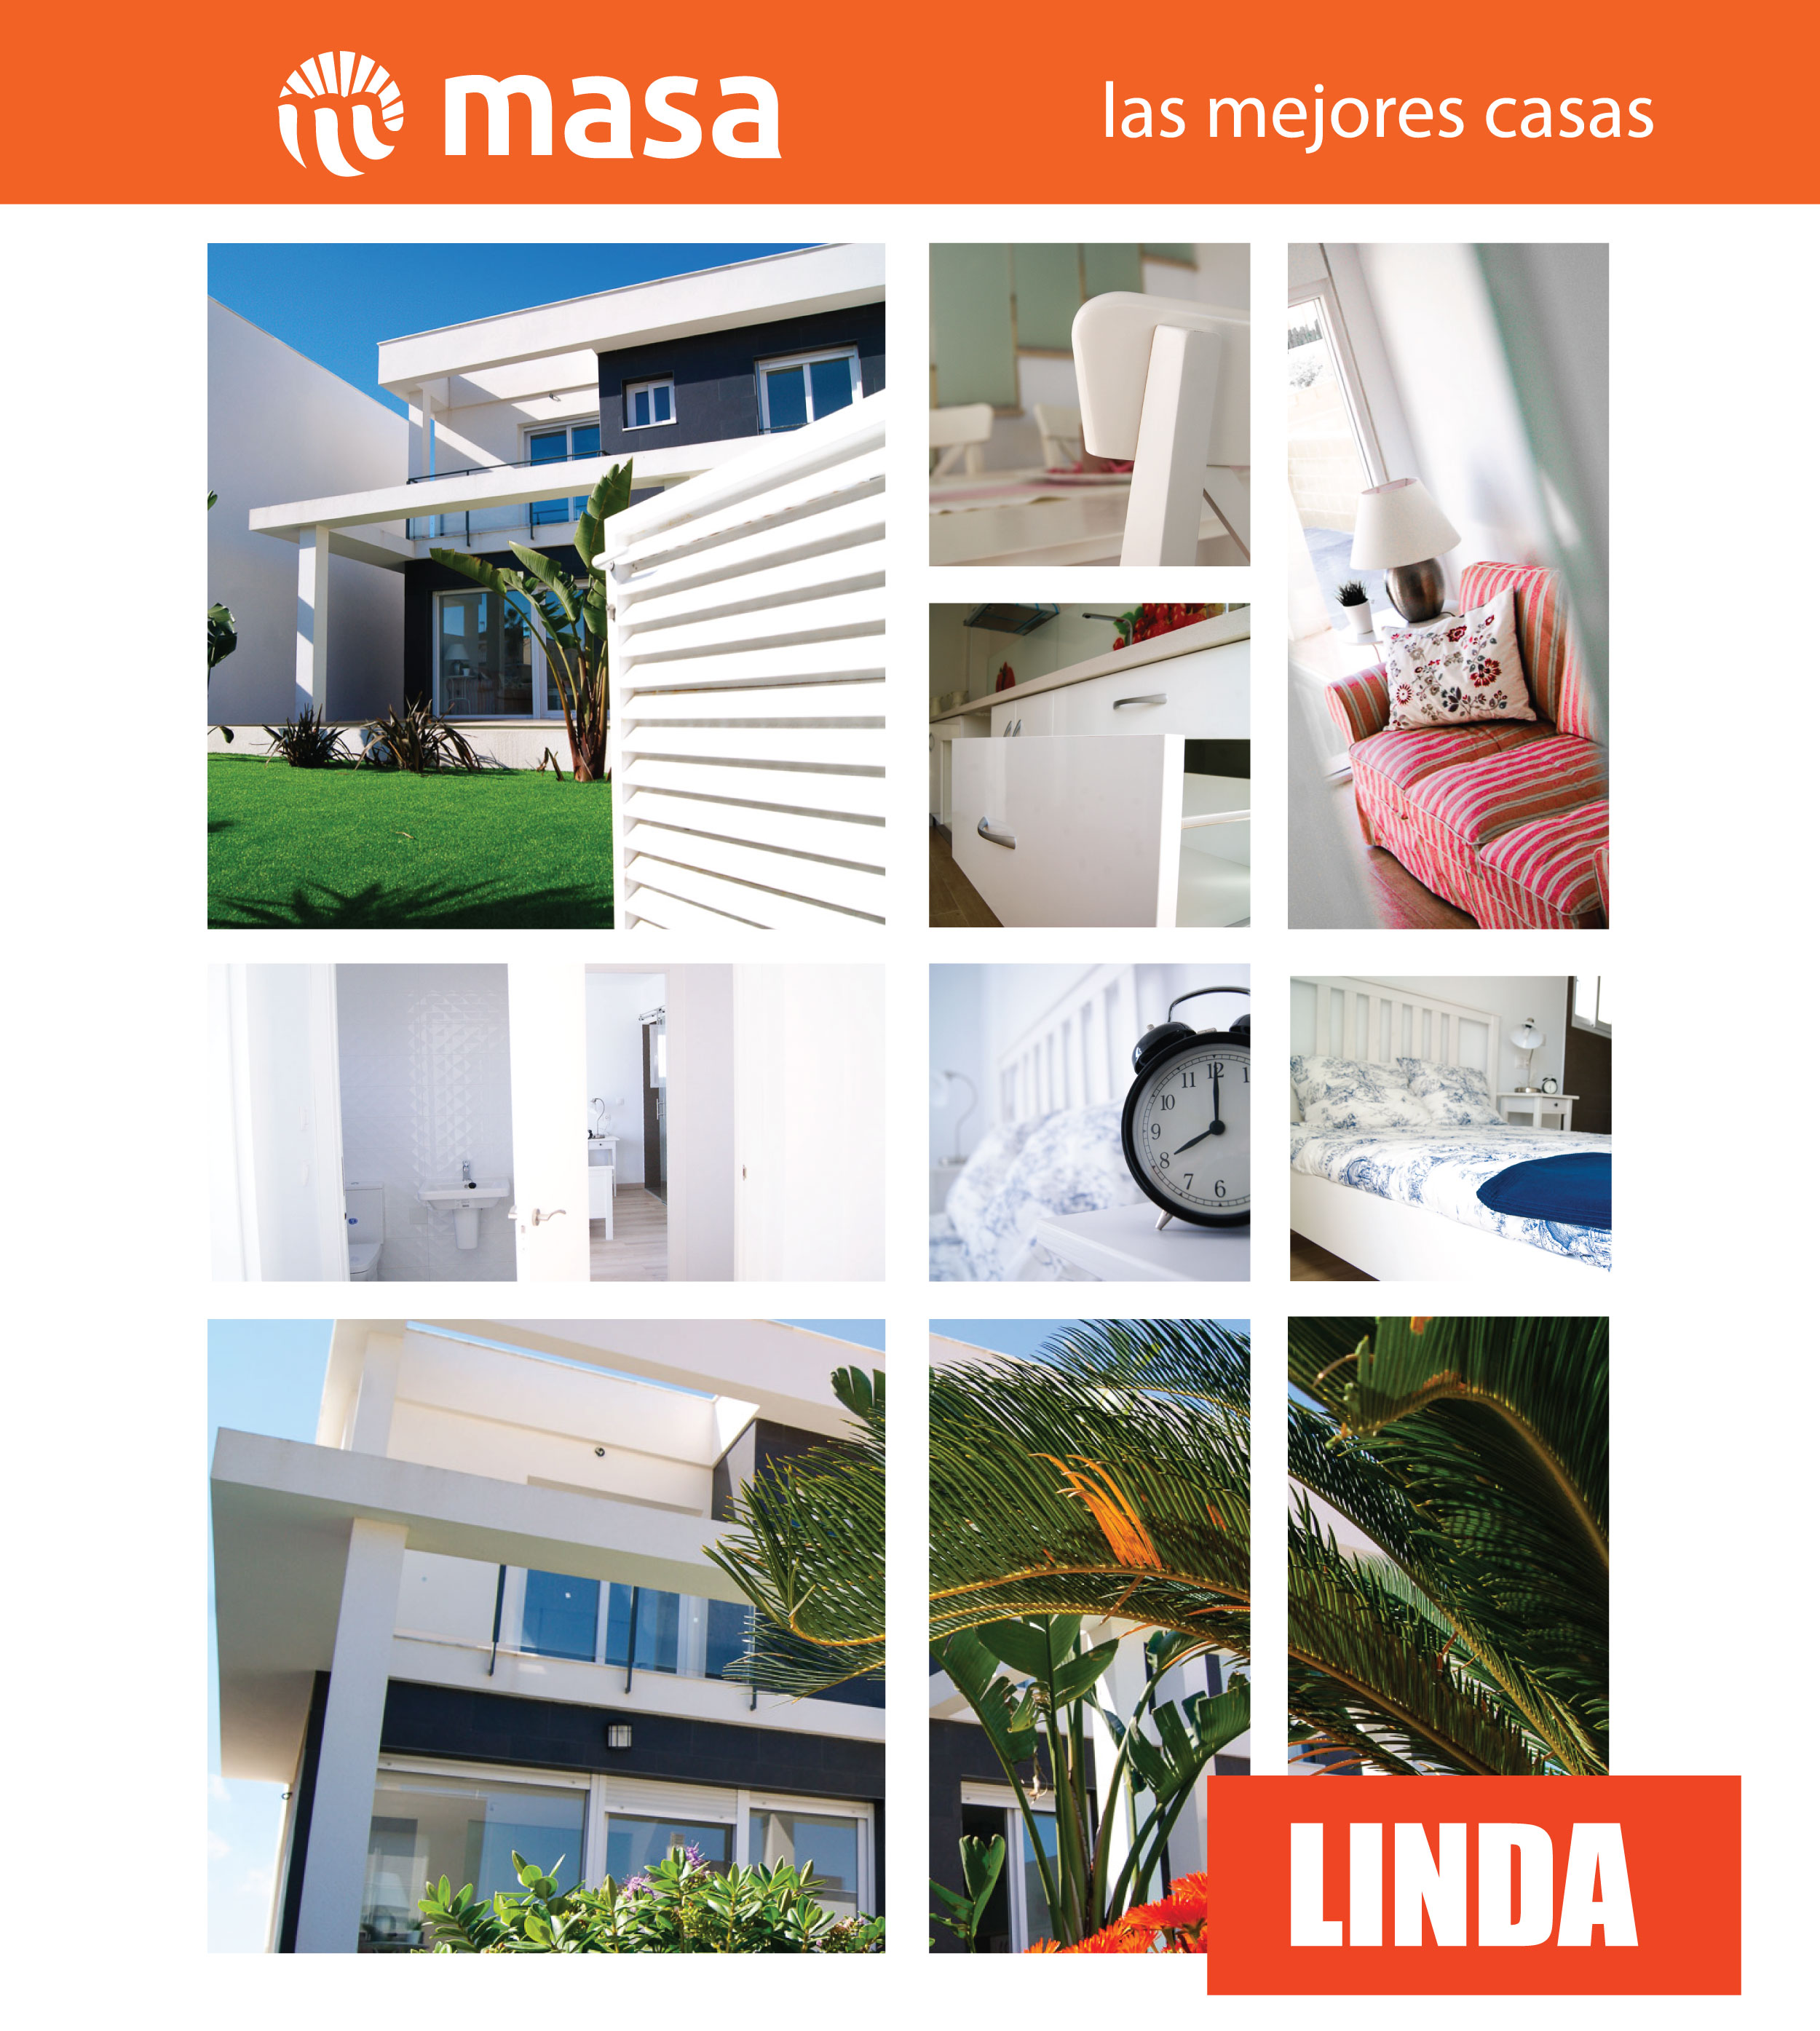 We introduce you ¡¡LINDA!!